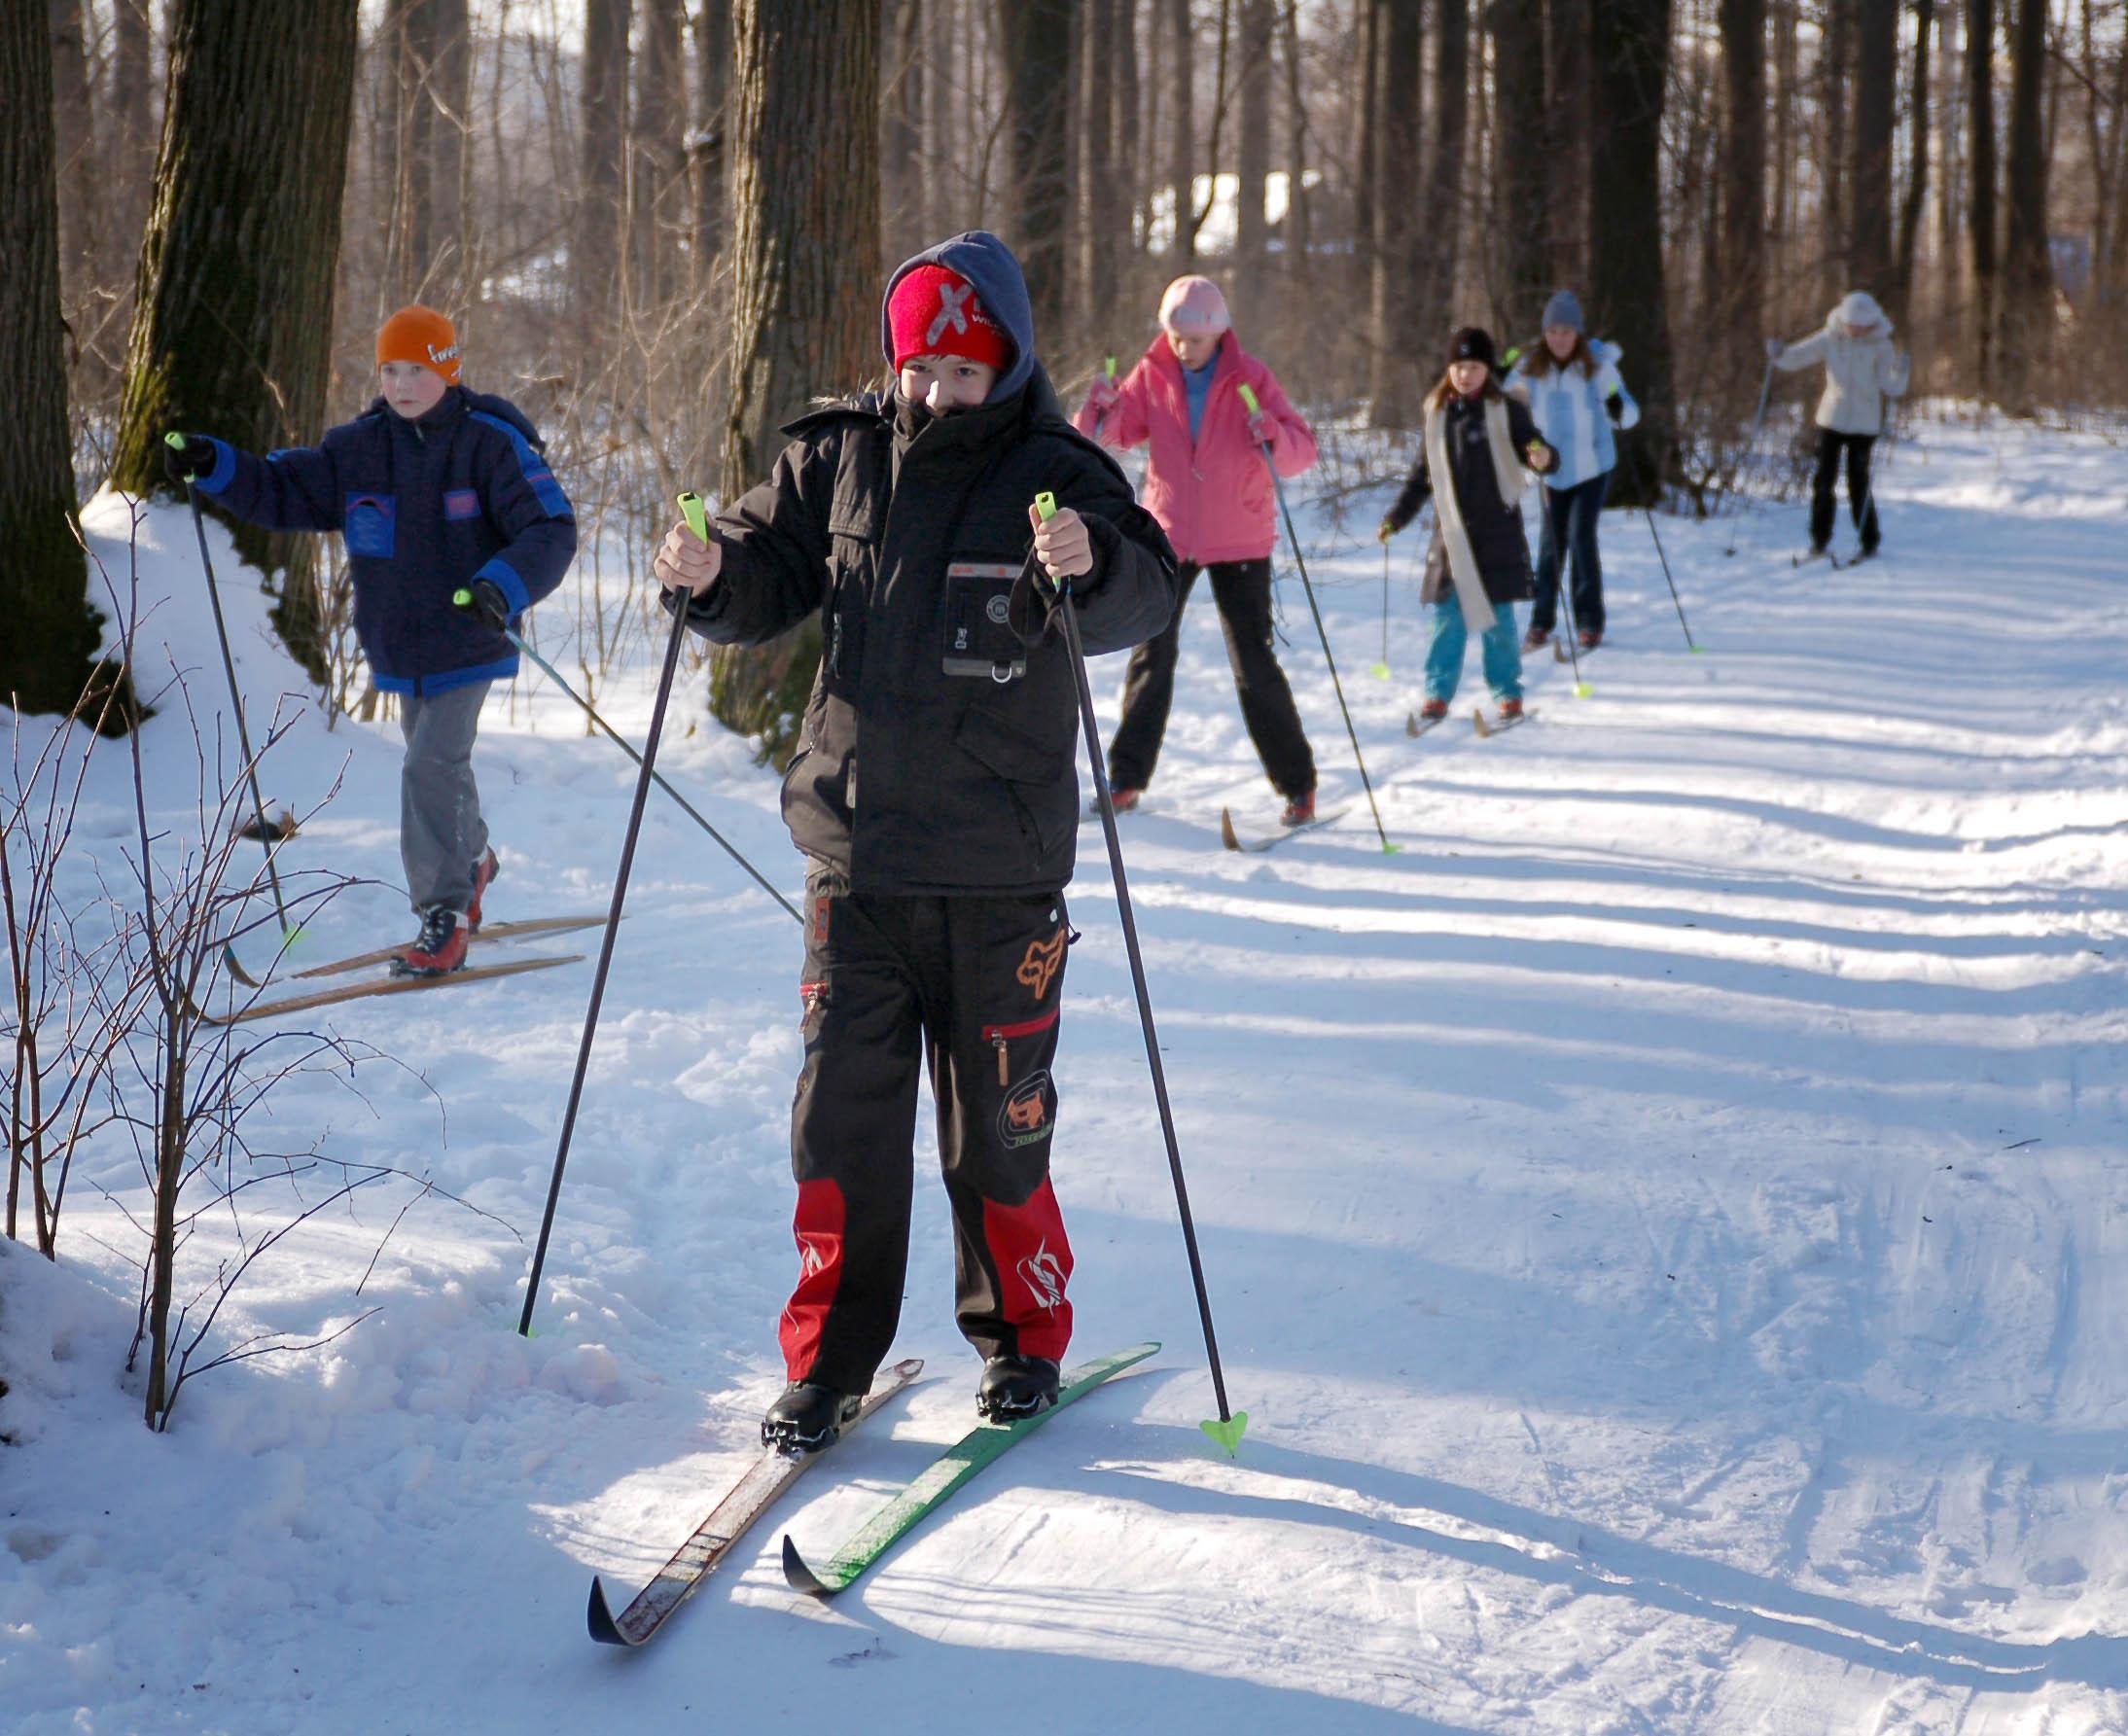 На горке, на лыжах, в лесу: как одеваться зимой удобно и выглядеть стильно  - 7Дней.ру